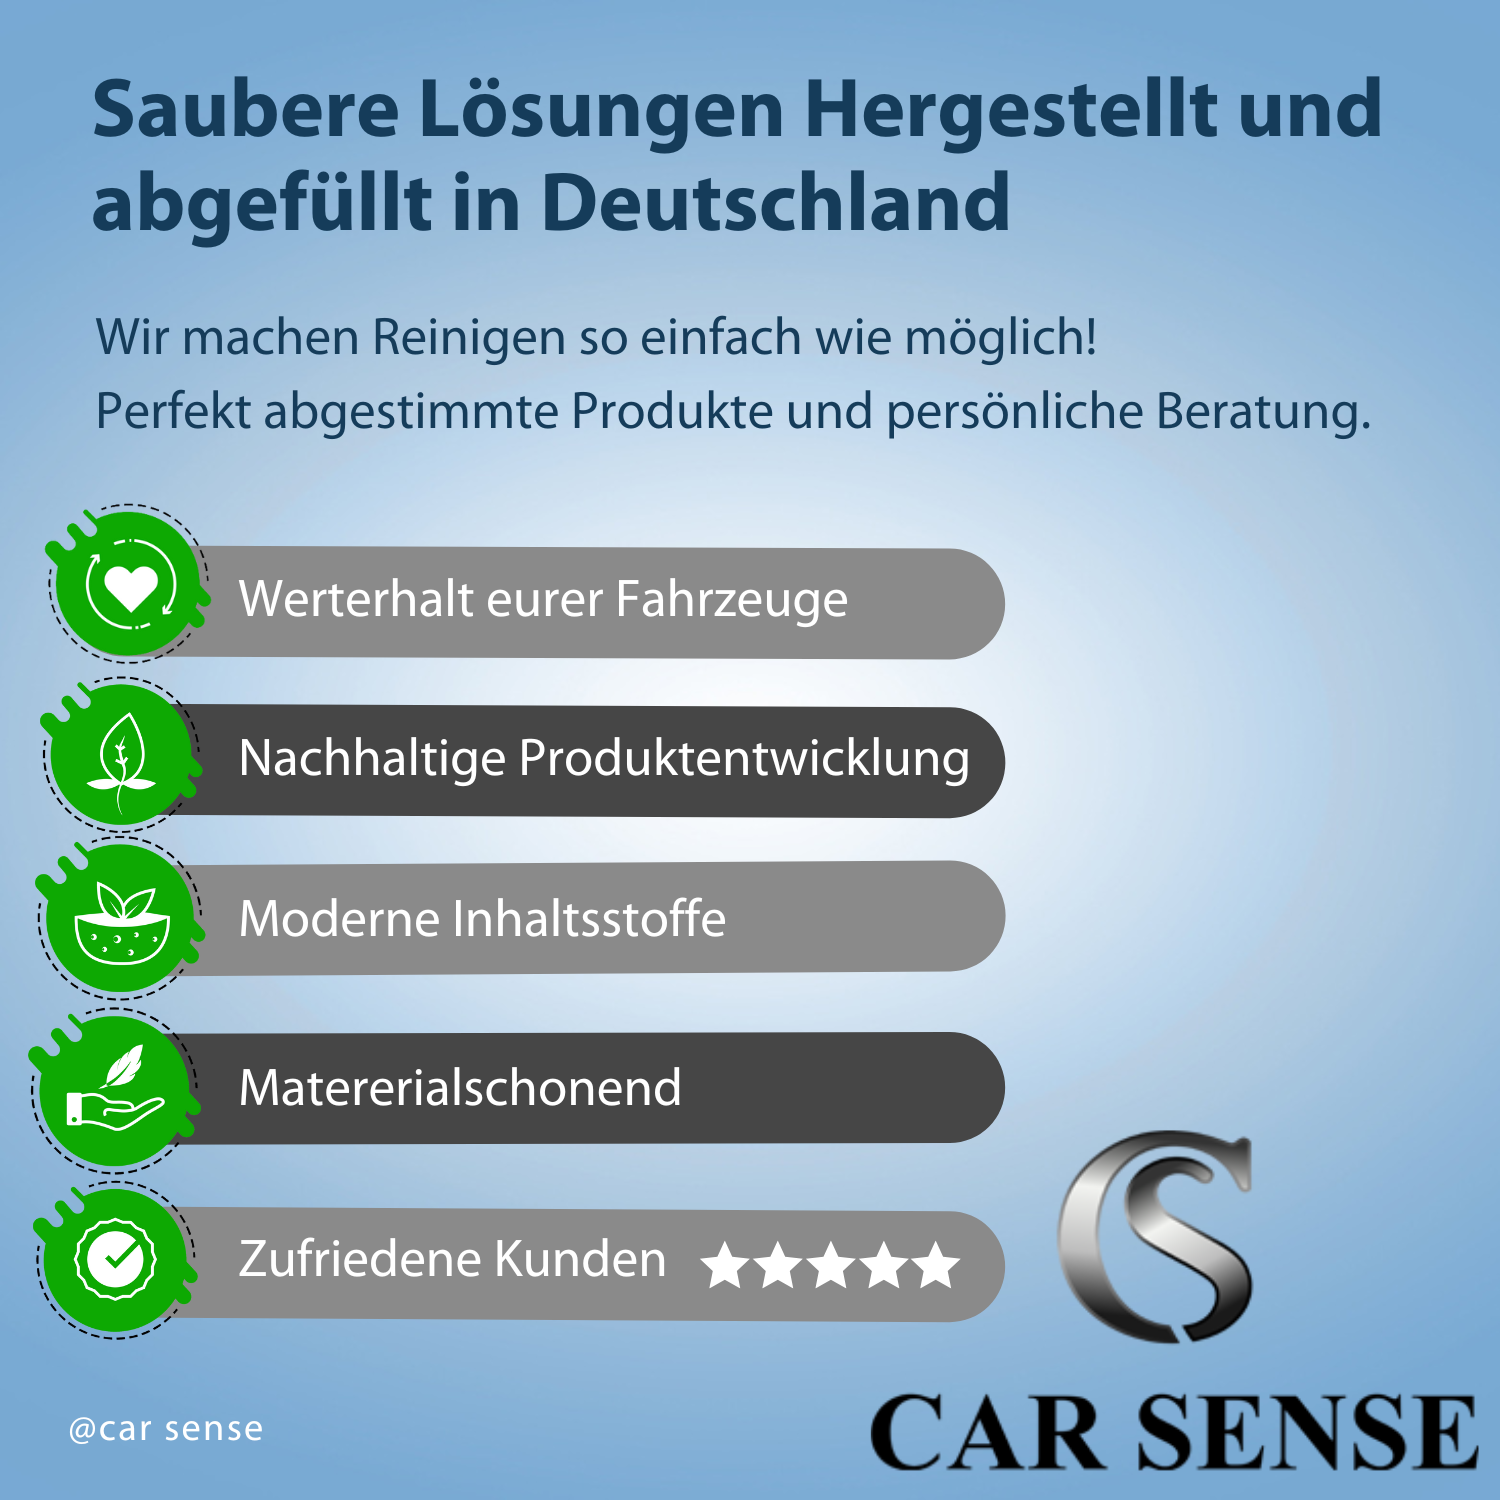 Car Sense Premium Kunststoffpolitur - Schonende Politur für glänzende Kunststoffoberflächen an Auto, Motorrad & Co. - Entfernt Kratzer, Verunreinigungen & mehr